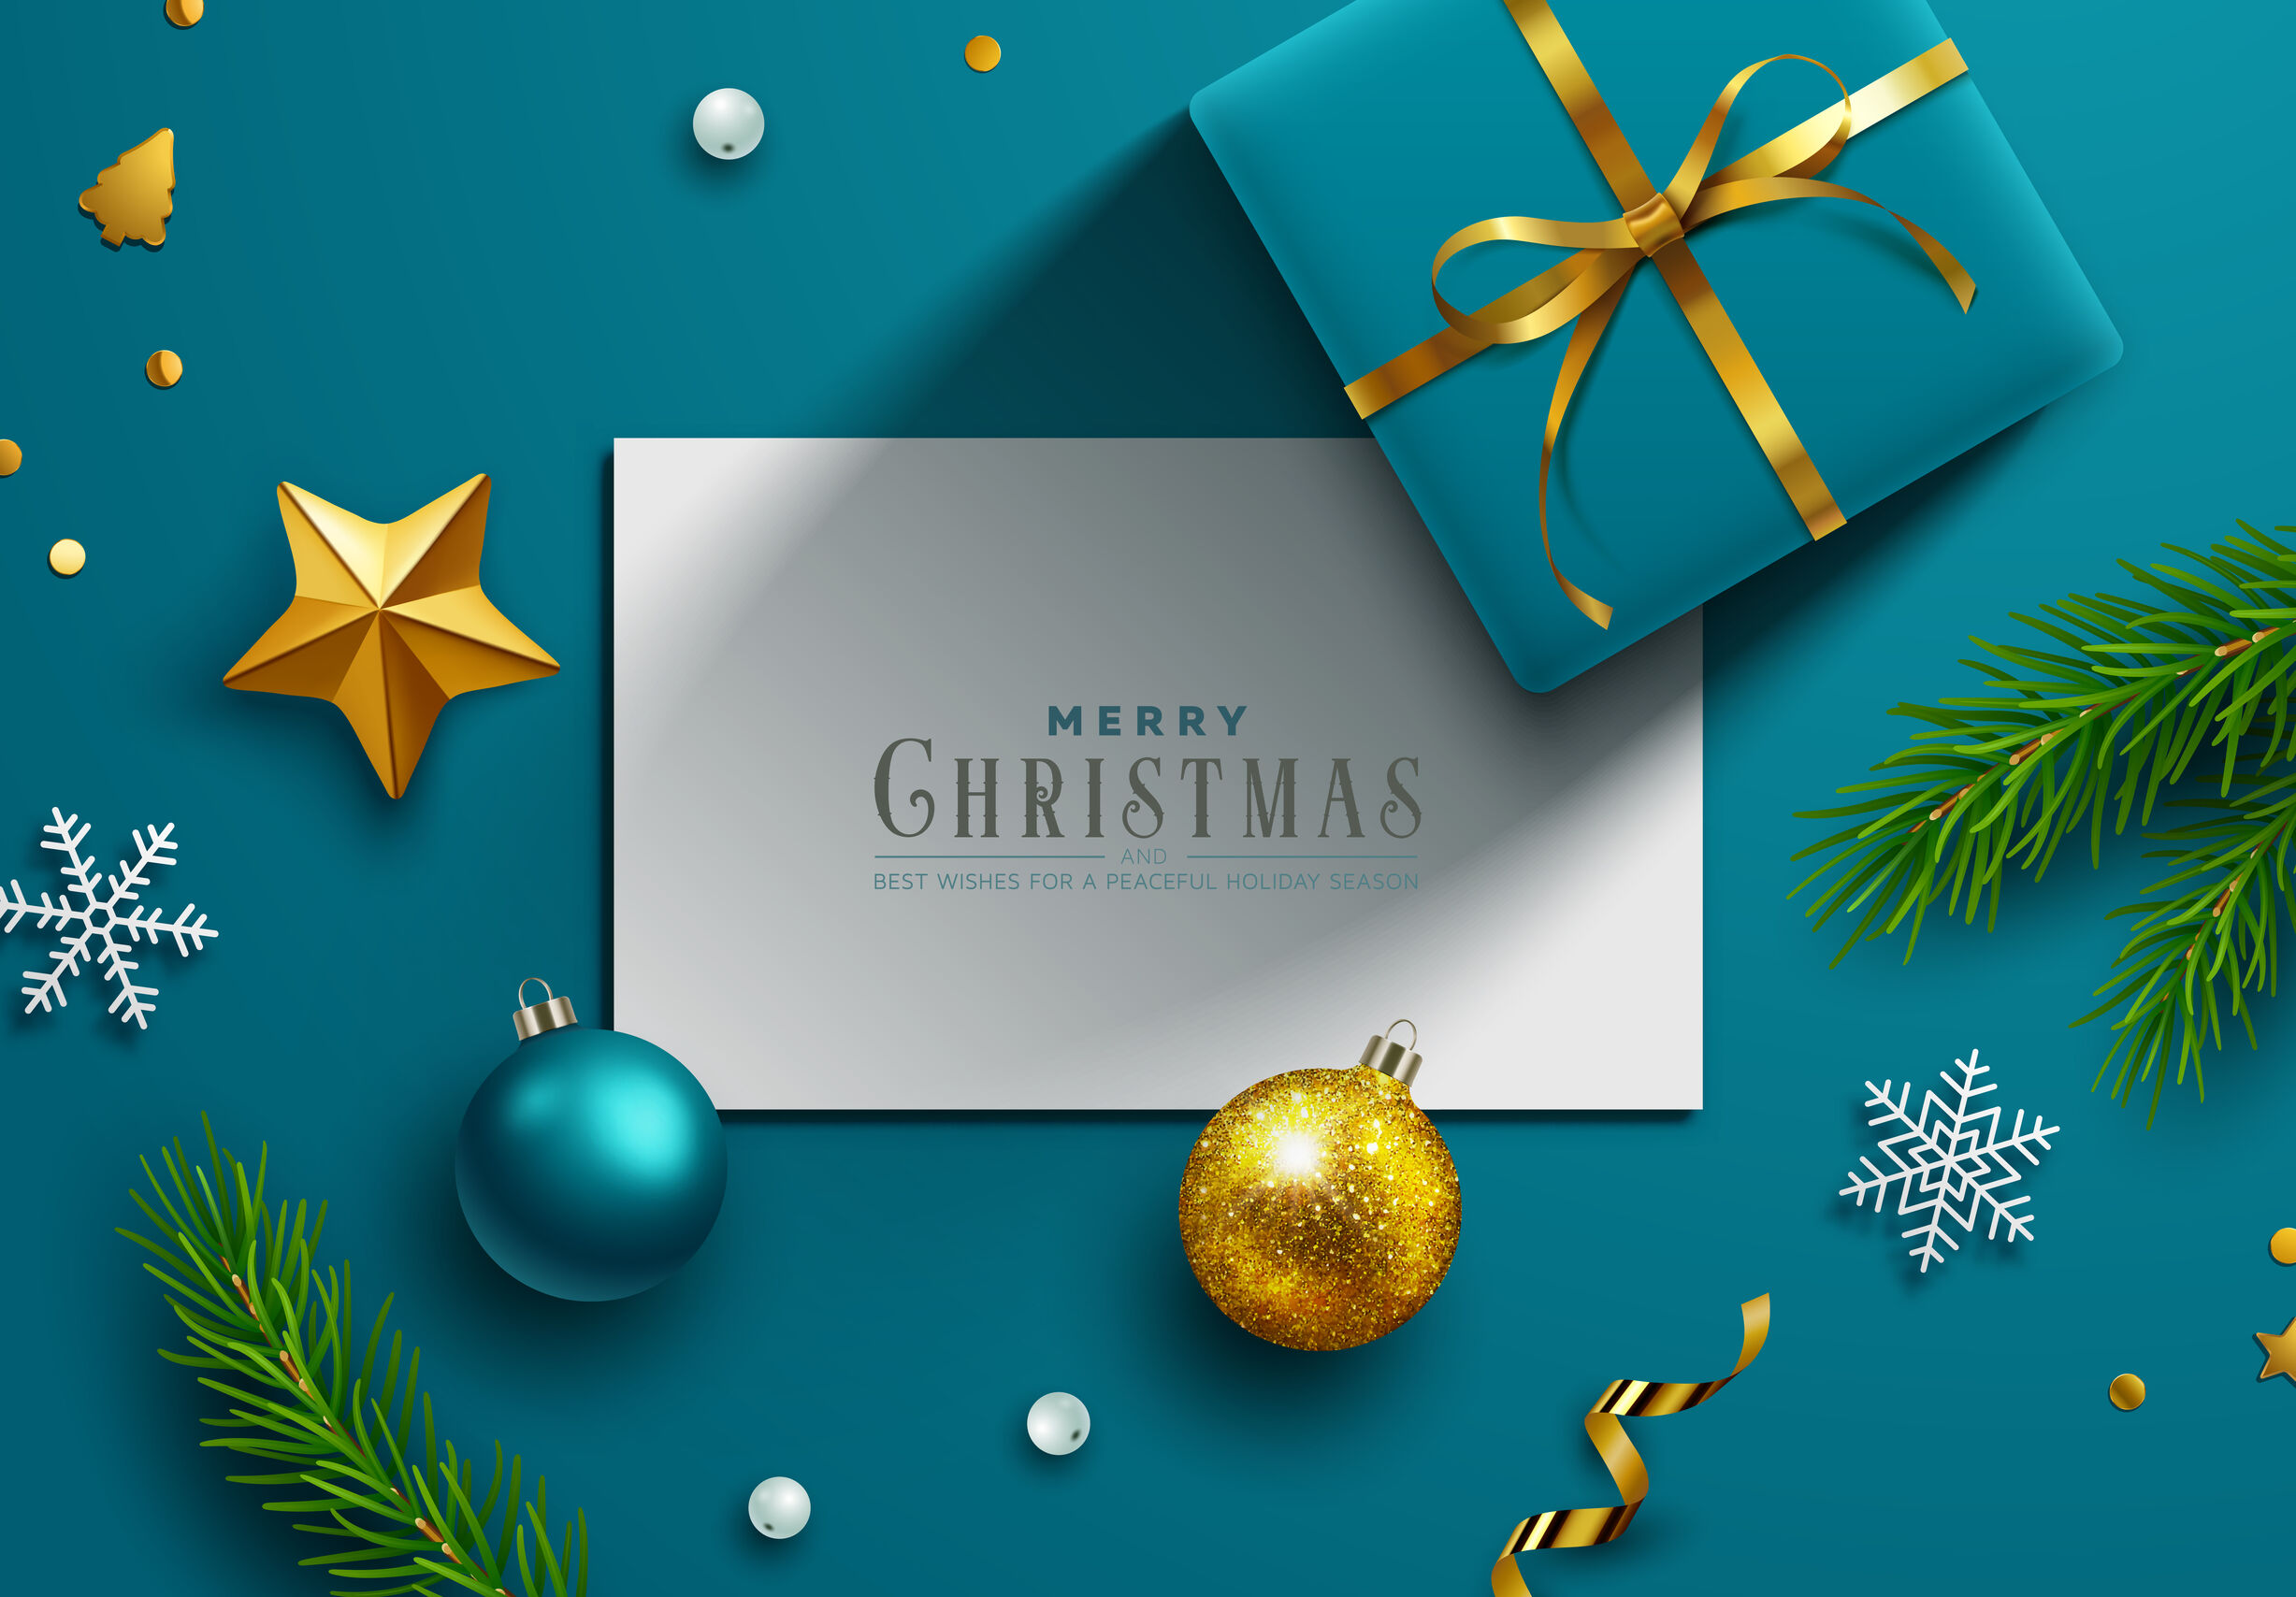 クリスマスカードに添えたい英語メッセージ 取引先に使えるビジネスフレーズも 英語で暮らしと仕事が楽しくなるビズメイツブログ Bizmates Blog